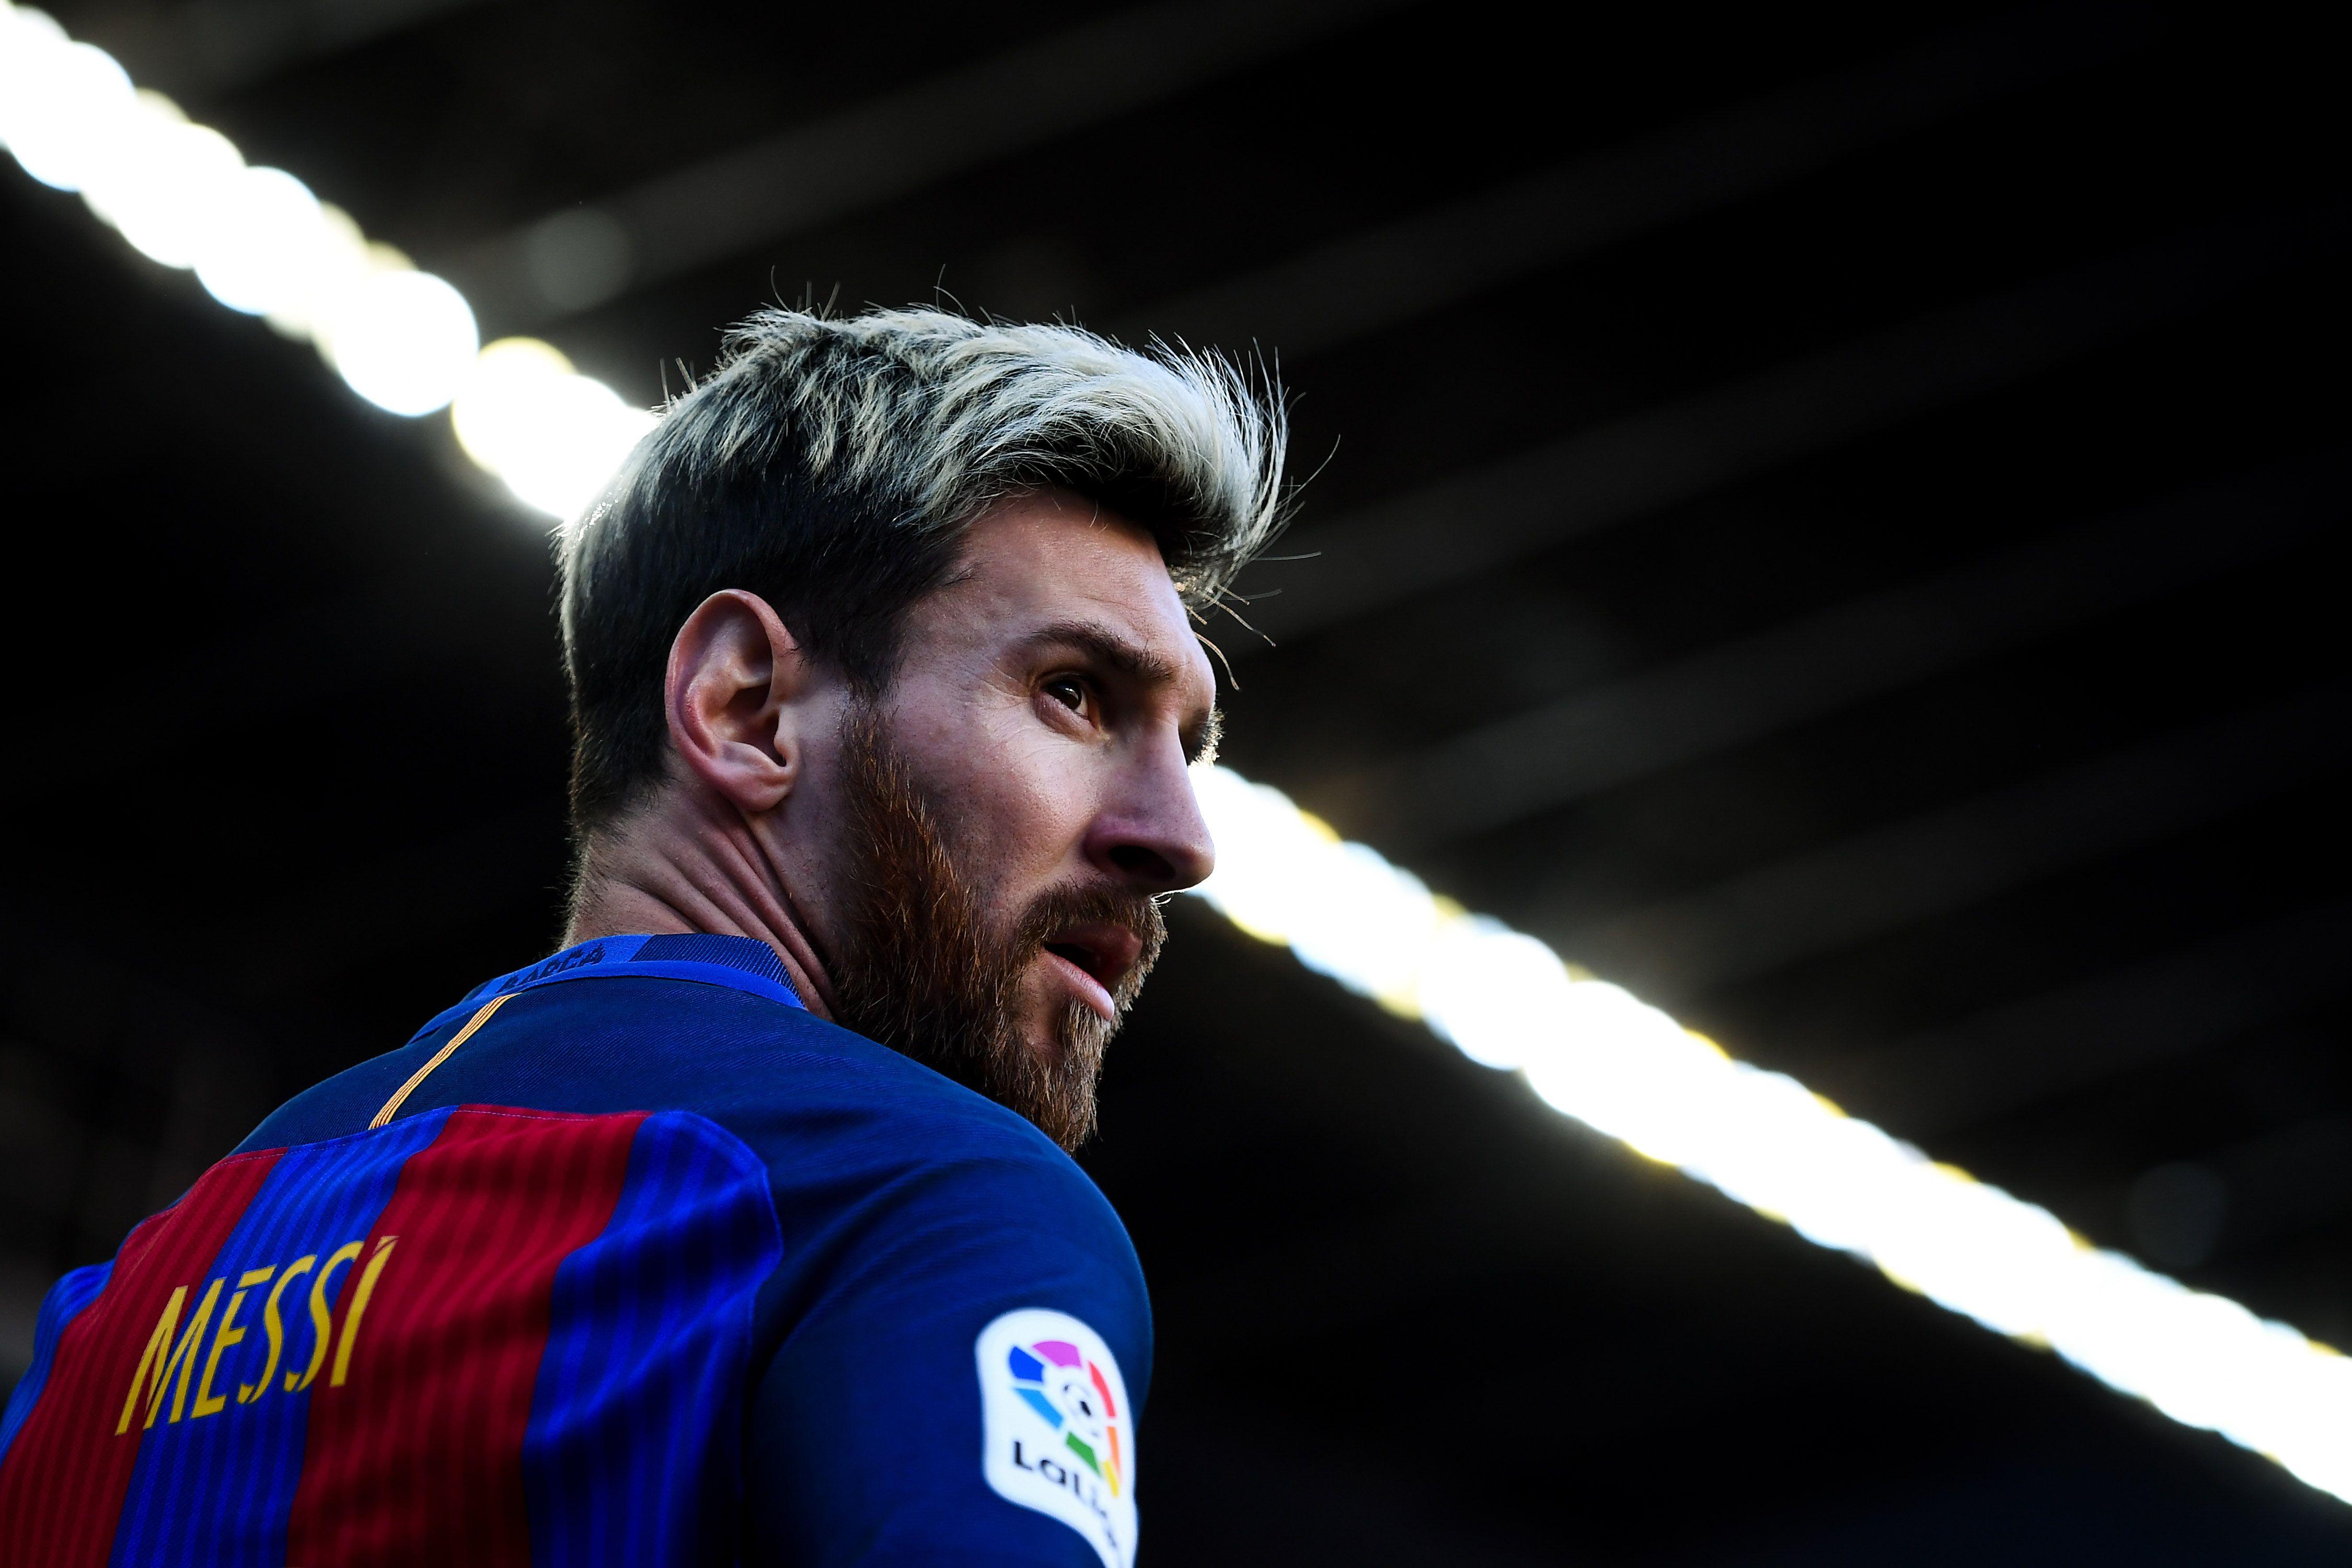 Ai nói Messi chỉ nổi tiếng với bóng đá? Hãy cùng xem những hình ảnh đẹp của Messi ở độ phân giải 4K để cảm nhận được sự tuyệt vời của người đàn ông này. Sẵn sàng cho một trải nghiệm siêu sắc nét?